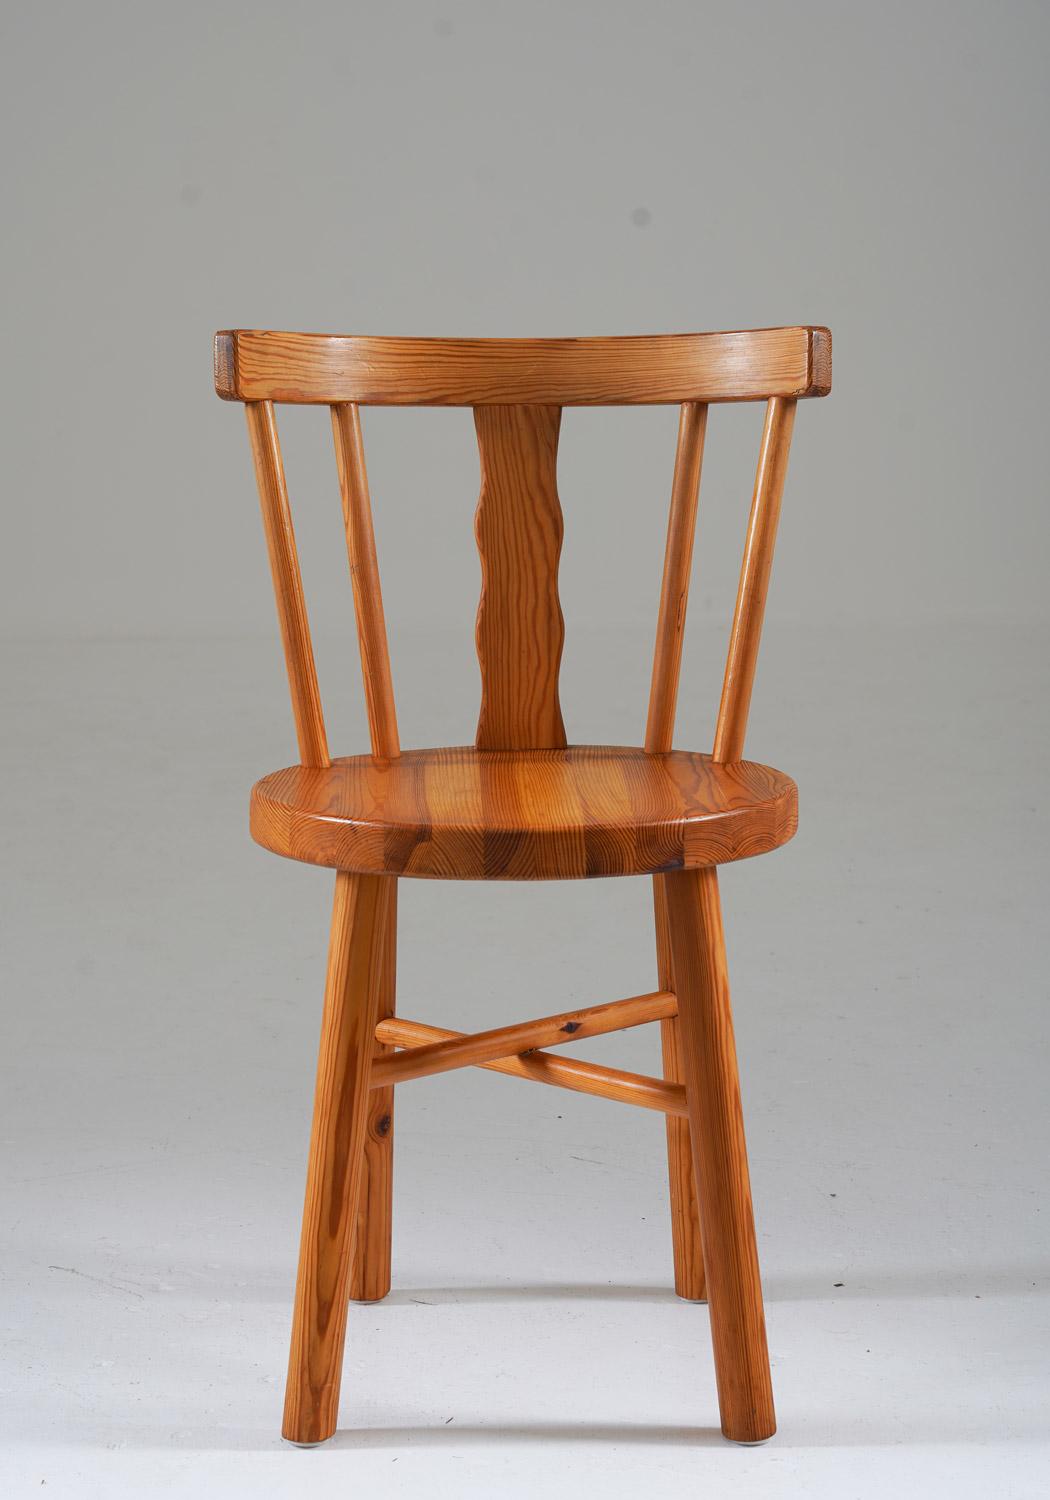 Wir präsentieren ein exquisites Ensemble von fünf Stühlen aus Kiefernholz, die von den geschätzten Handwerkern von Steneby Hemslöjd, Schweden, hergestellt wurden. Jeder Stuhl verkörpert den Inbegriff akribischer Kunstfertigkeit, die sich in jedem